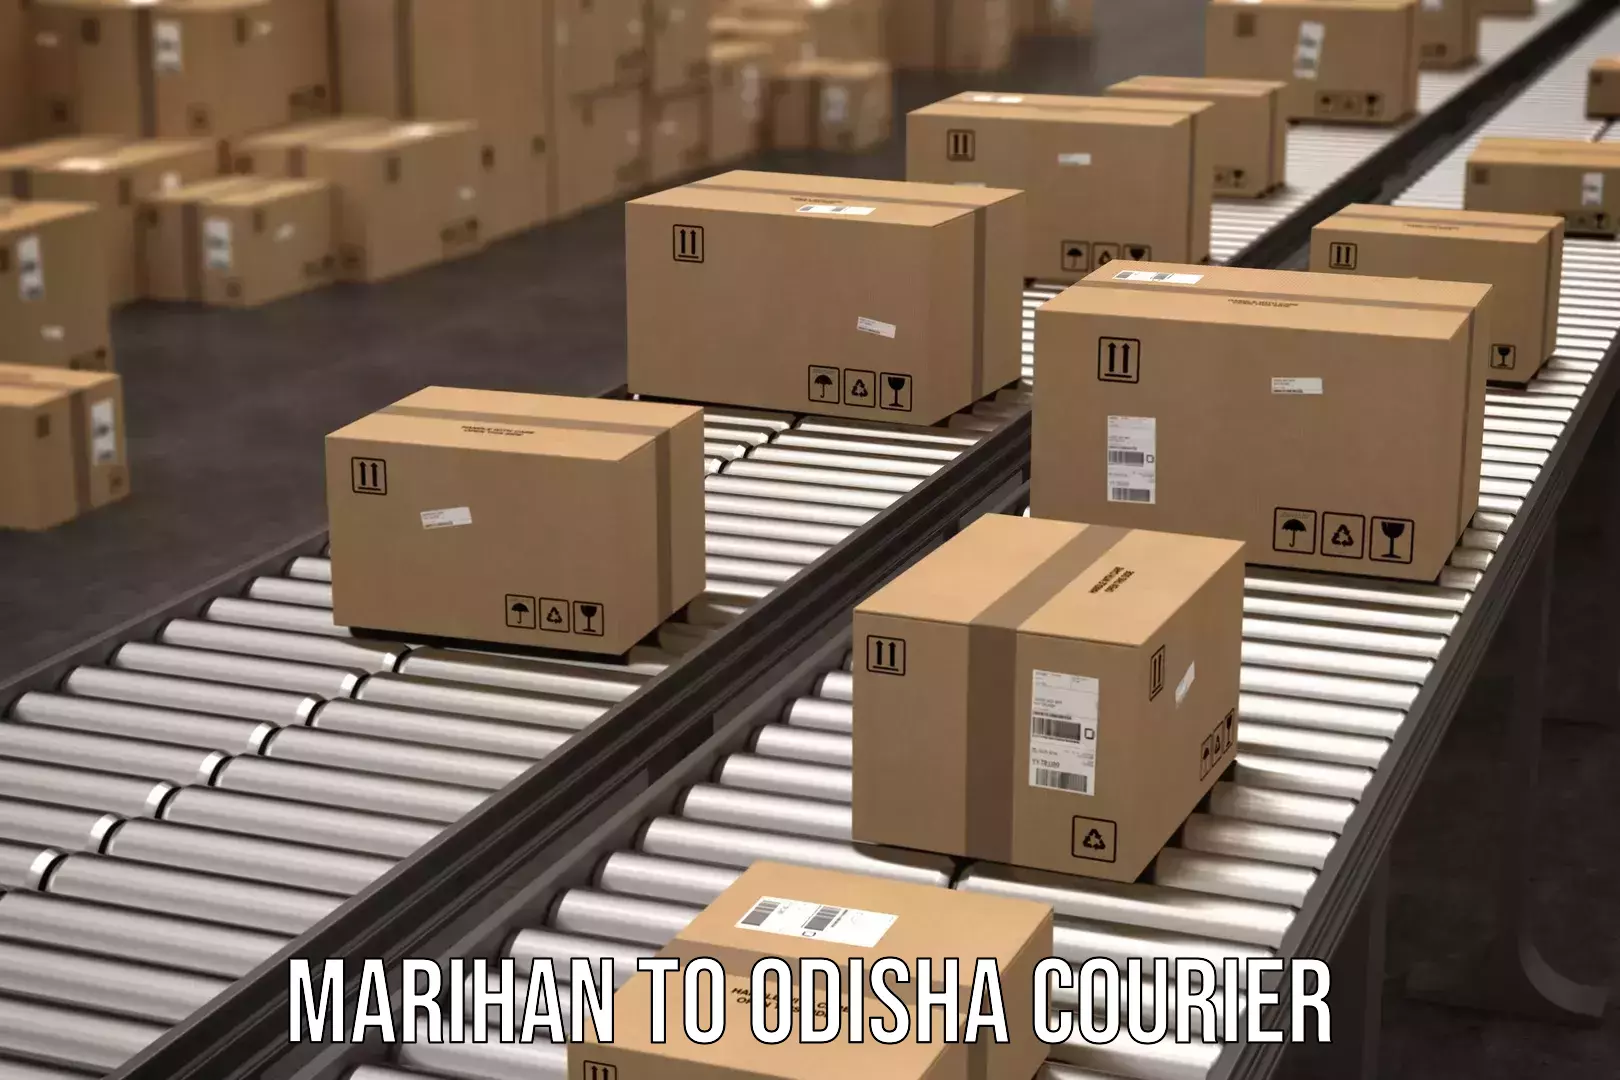 Express mail solutions Marihan to Odisha